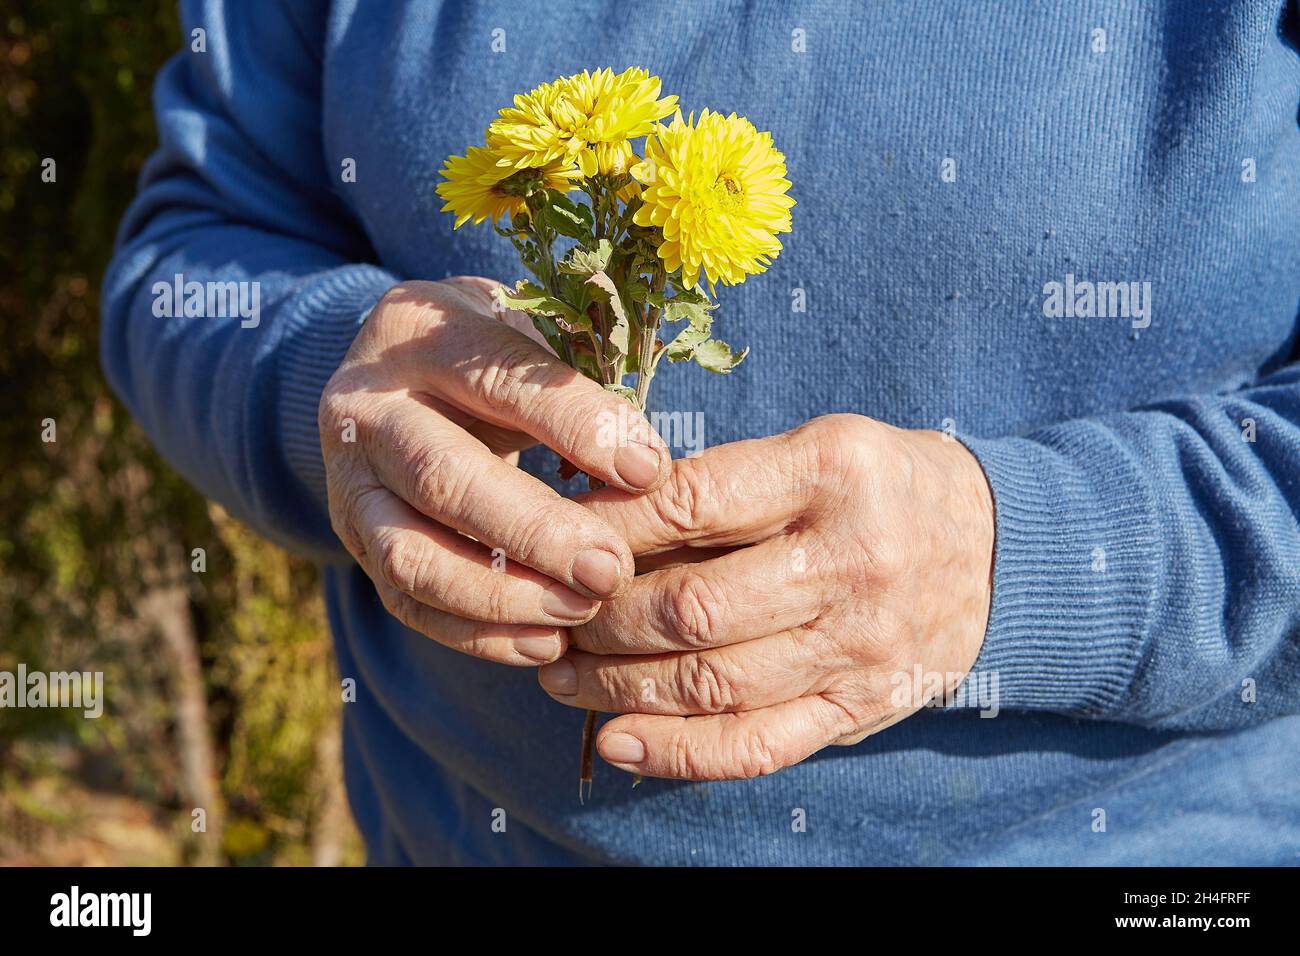 Hände einer älteren Frau mit gelben Chrysanthemen. Gearbeitete Hände. Stockfoto